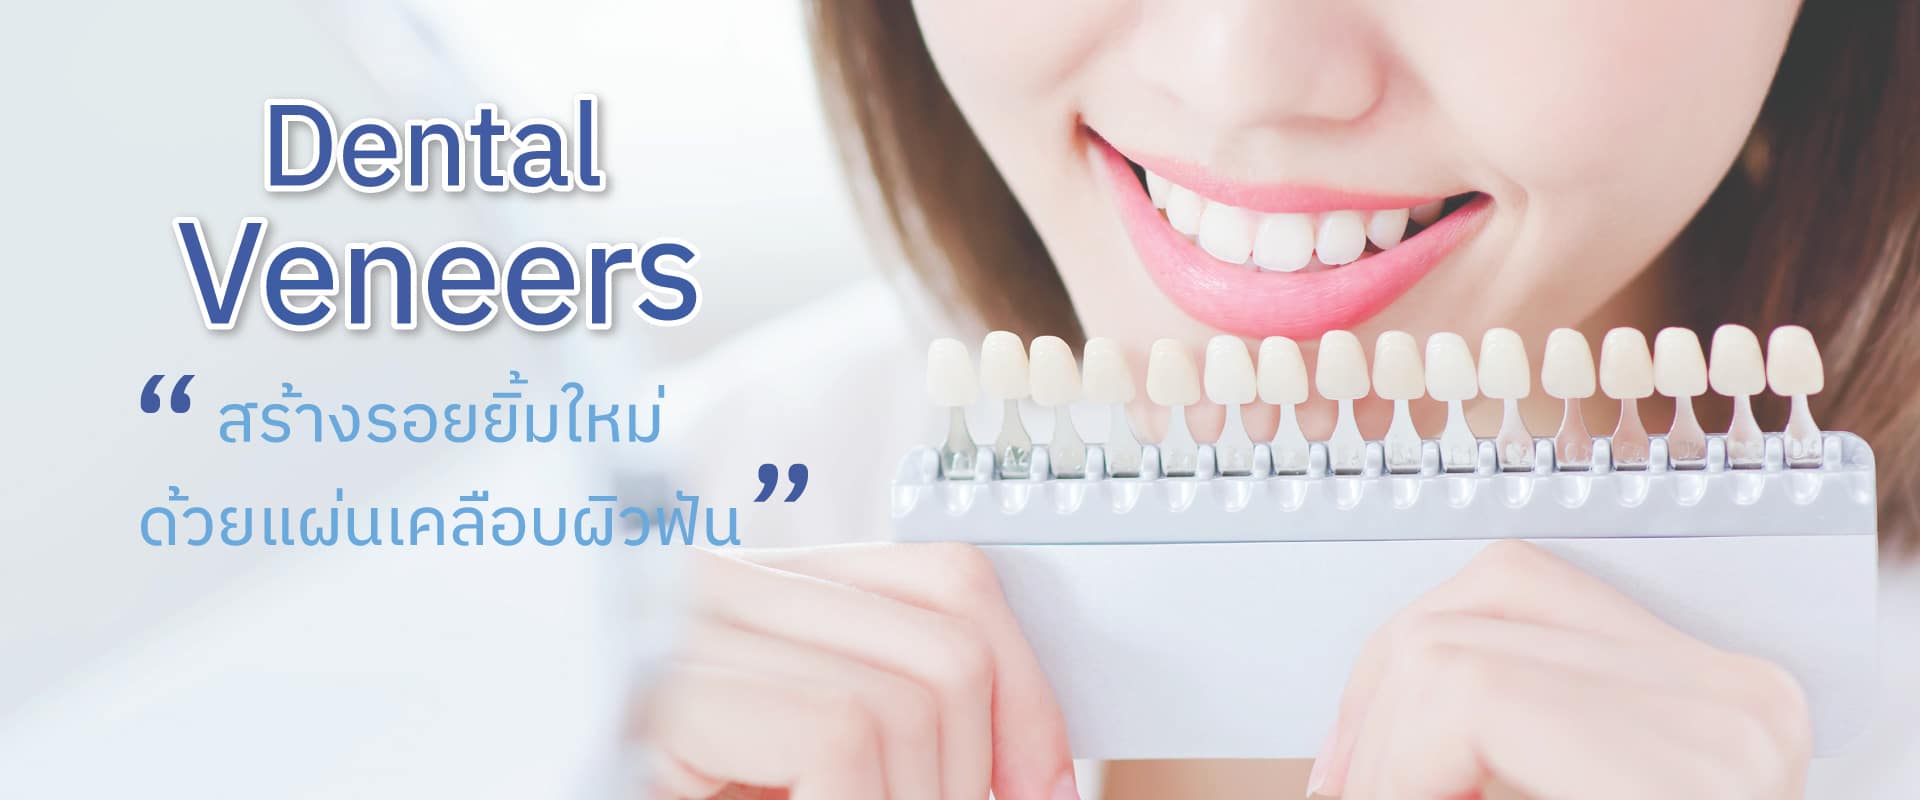 banner-dental-veneers